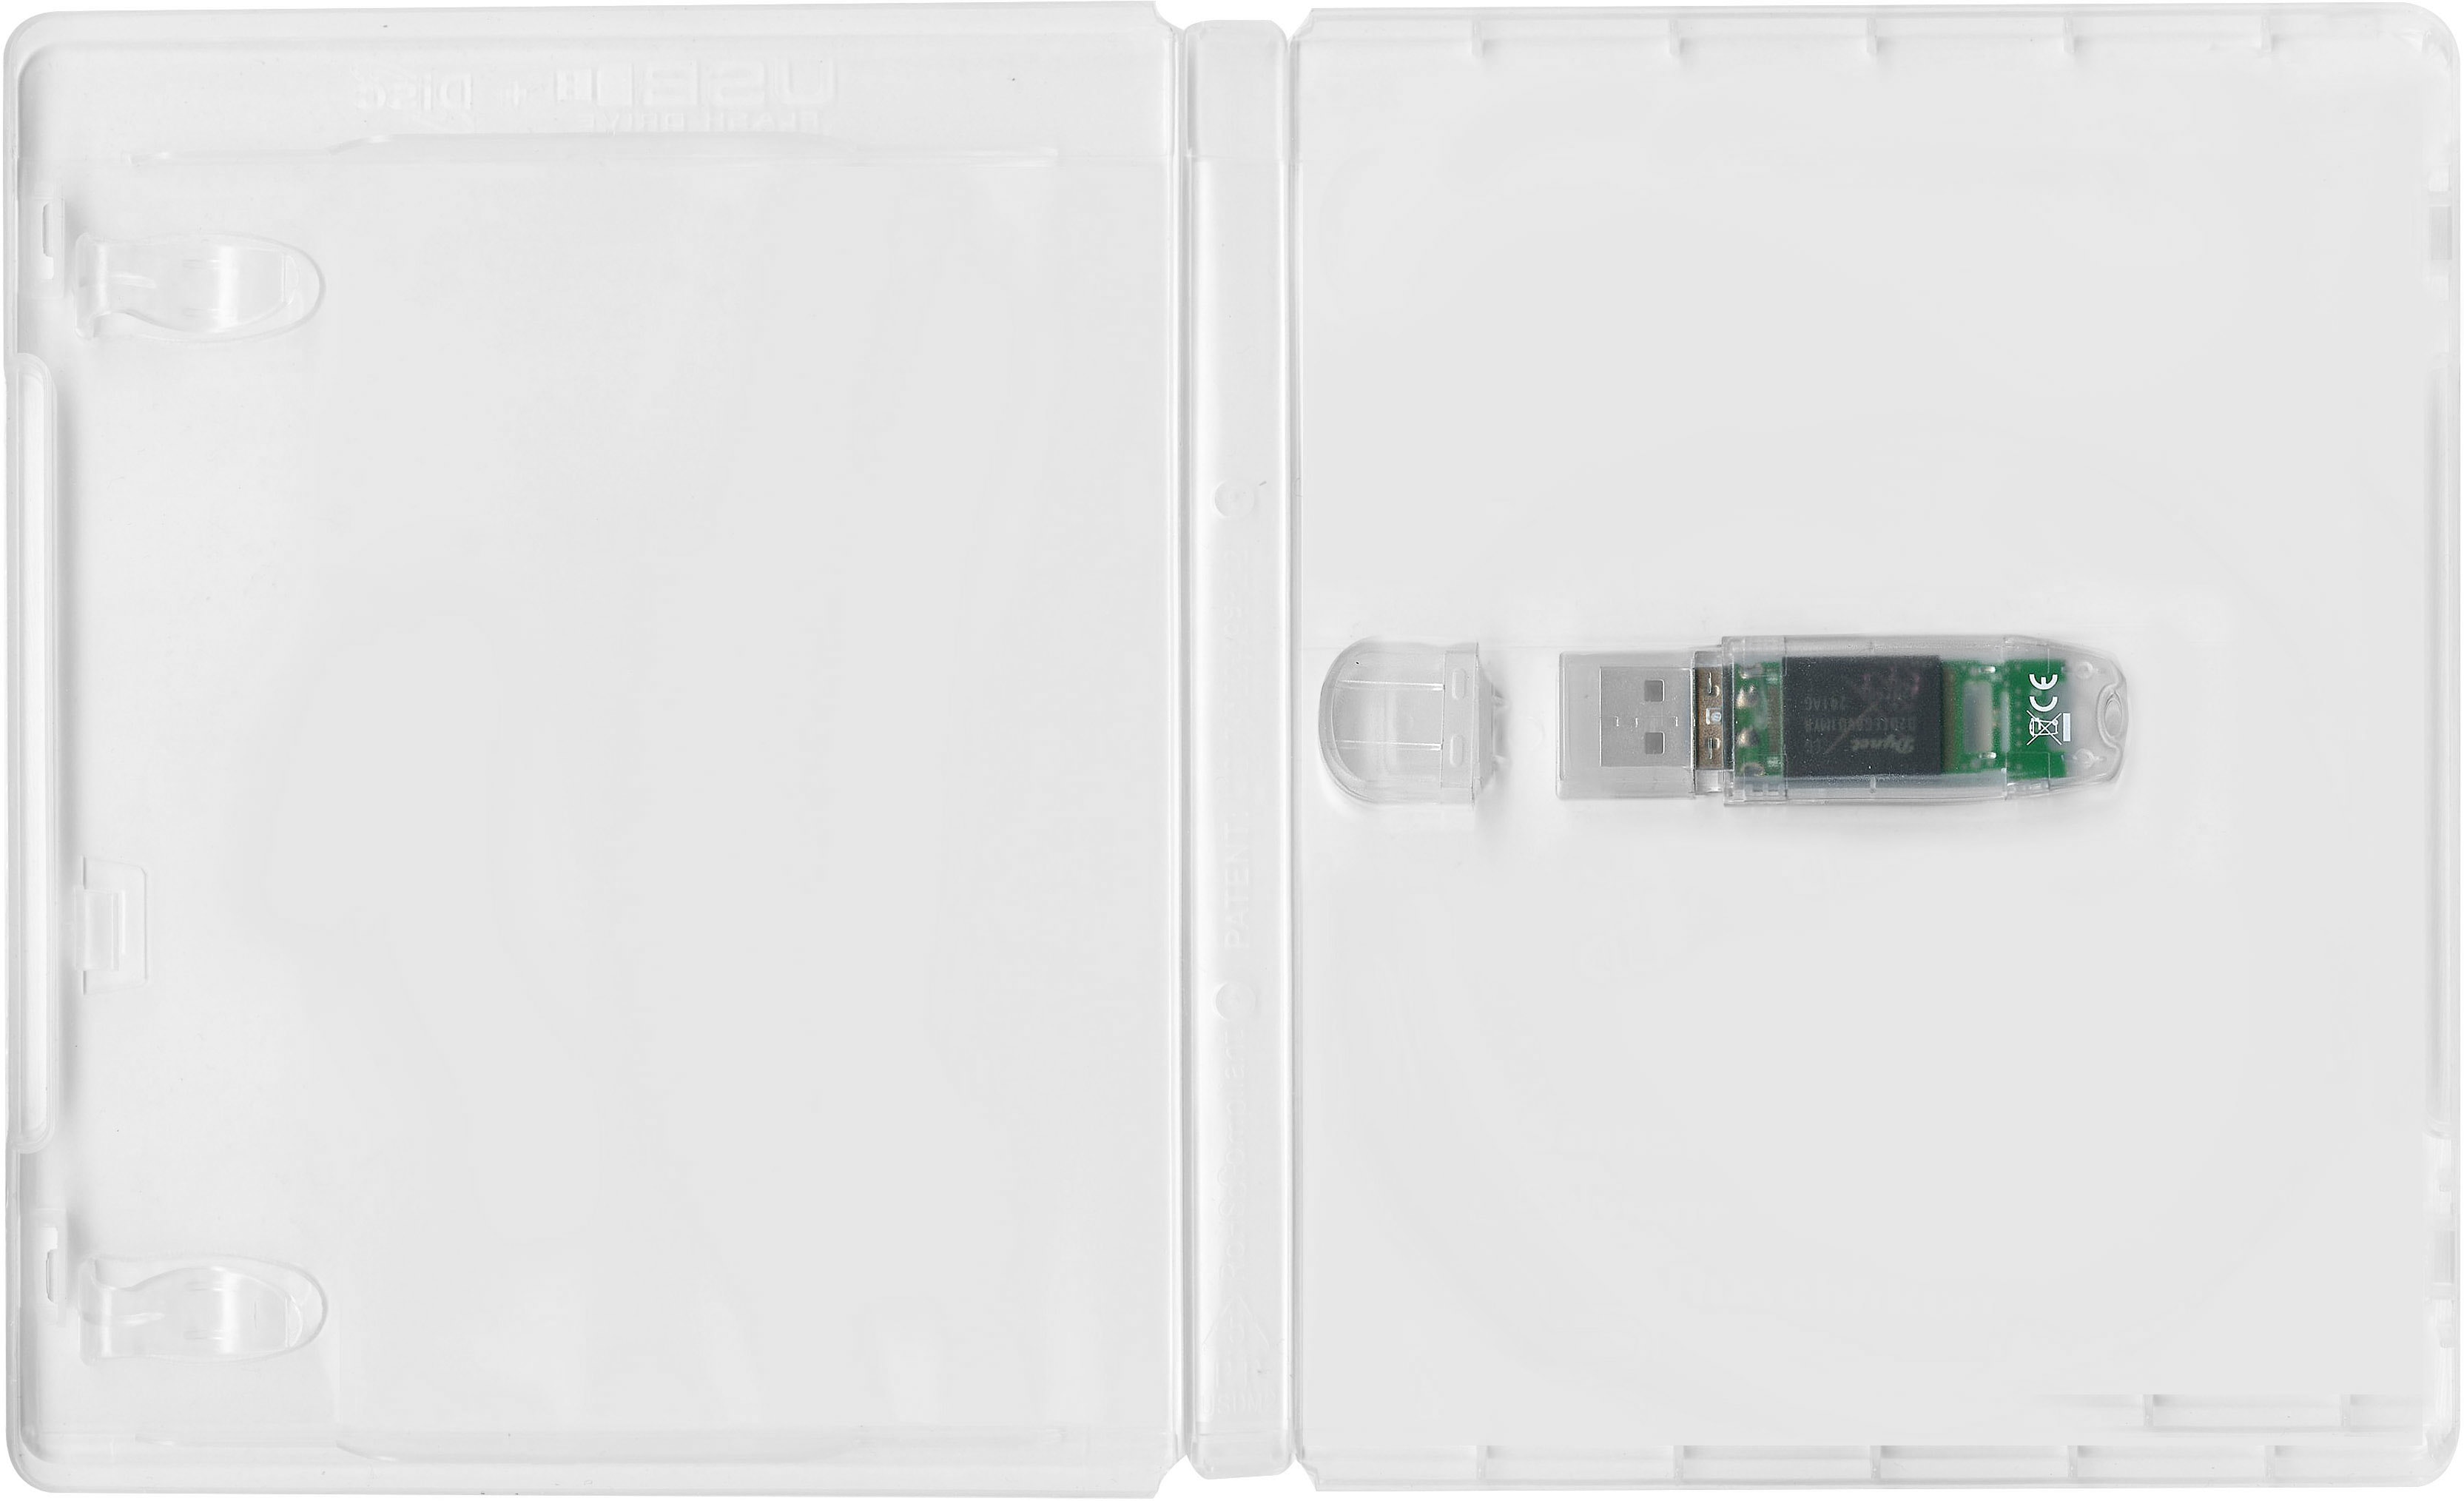 Box für 1 USB-Stick mit Kappenhalterung und Umschlagblatt